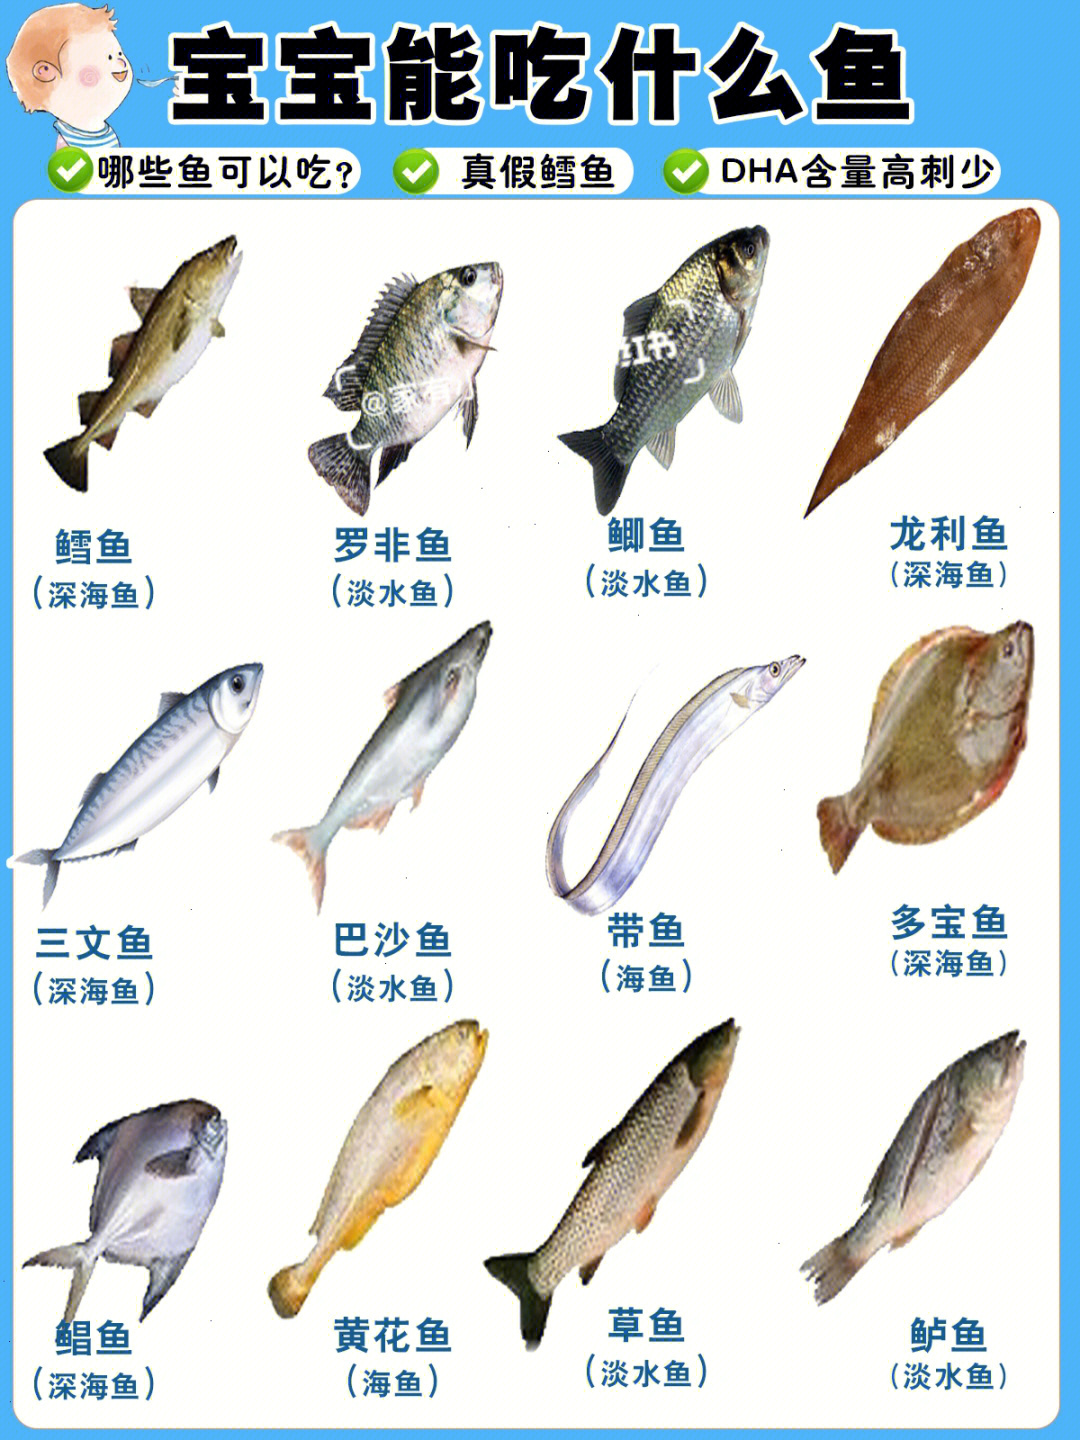 各种鱼的图片和名字图片